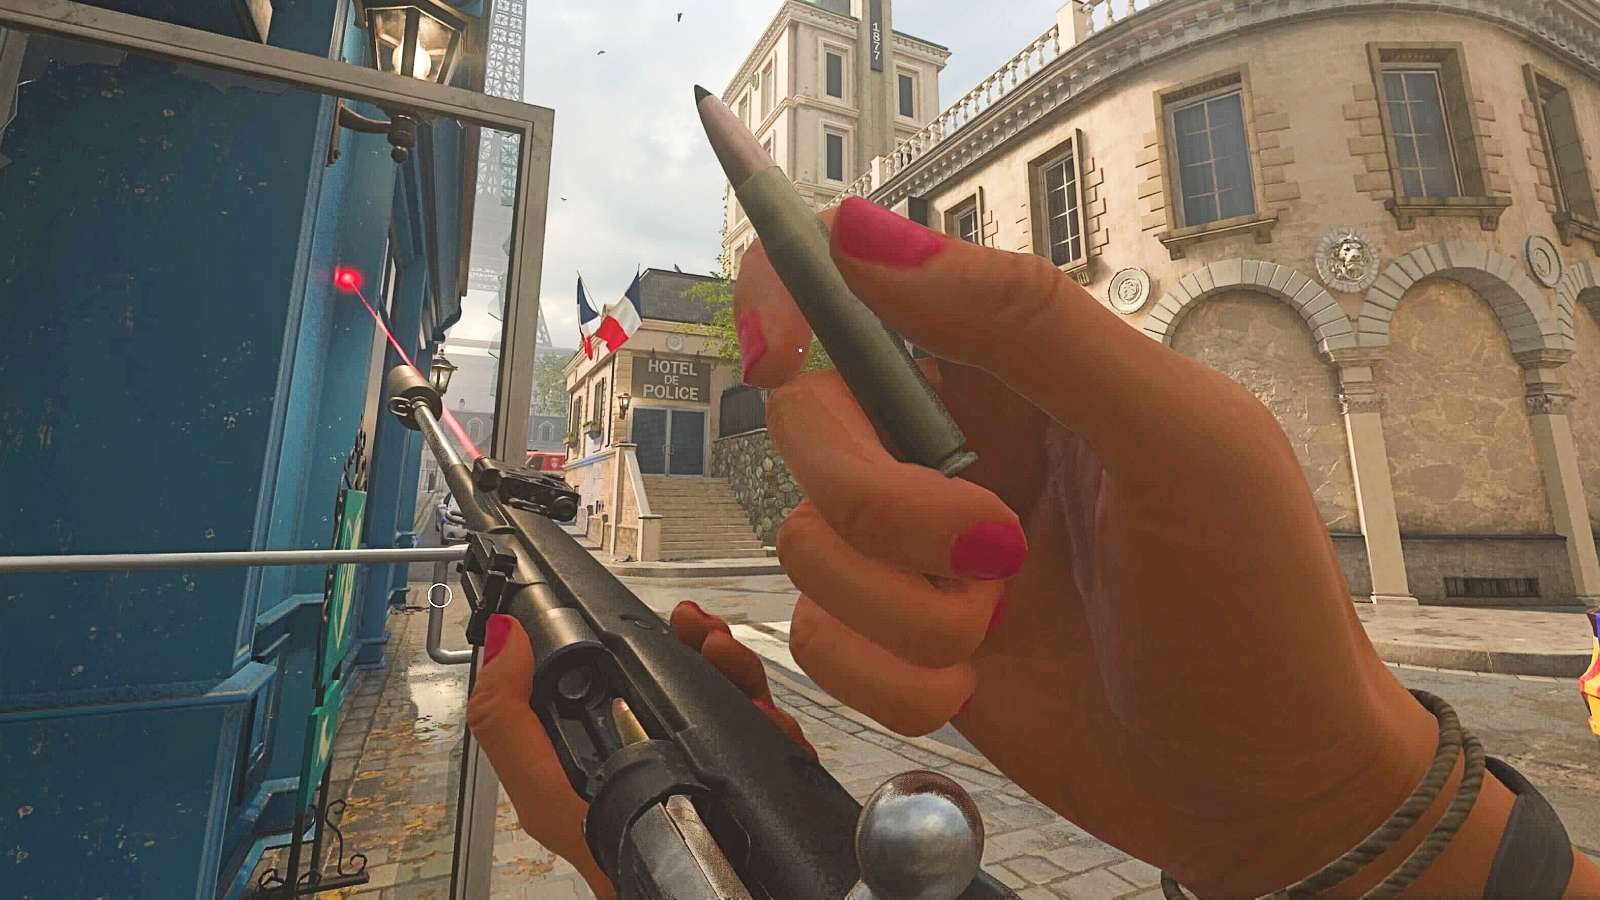 Kar98 weapon inspect on Paris map in Modern Warfare 3